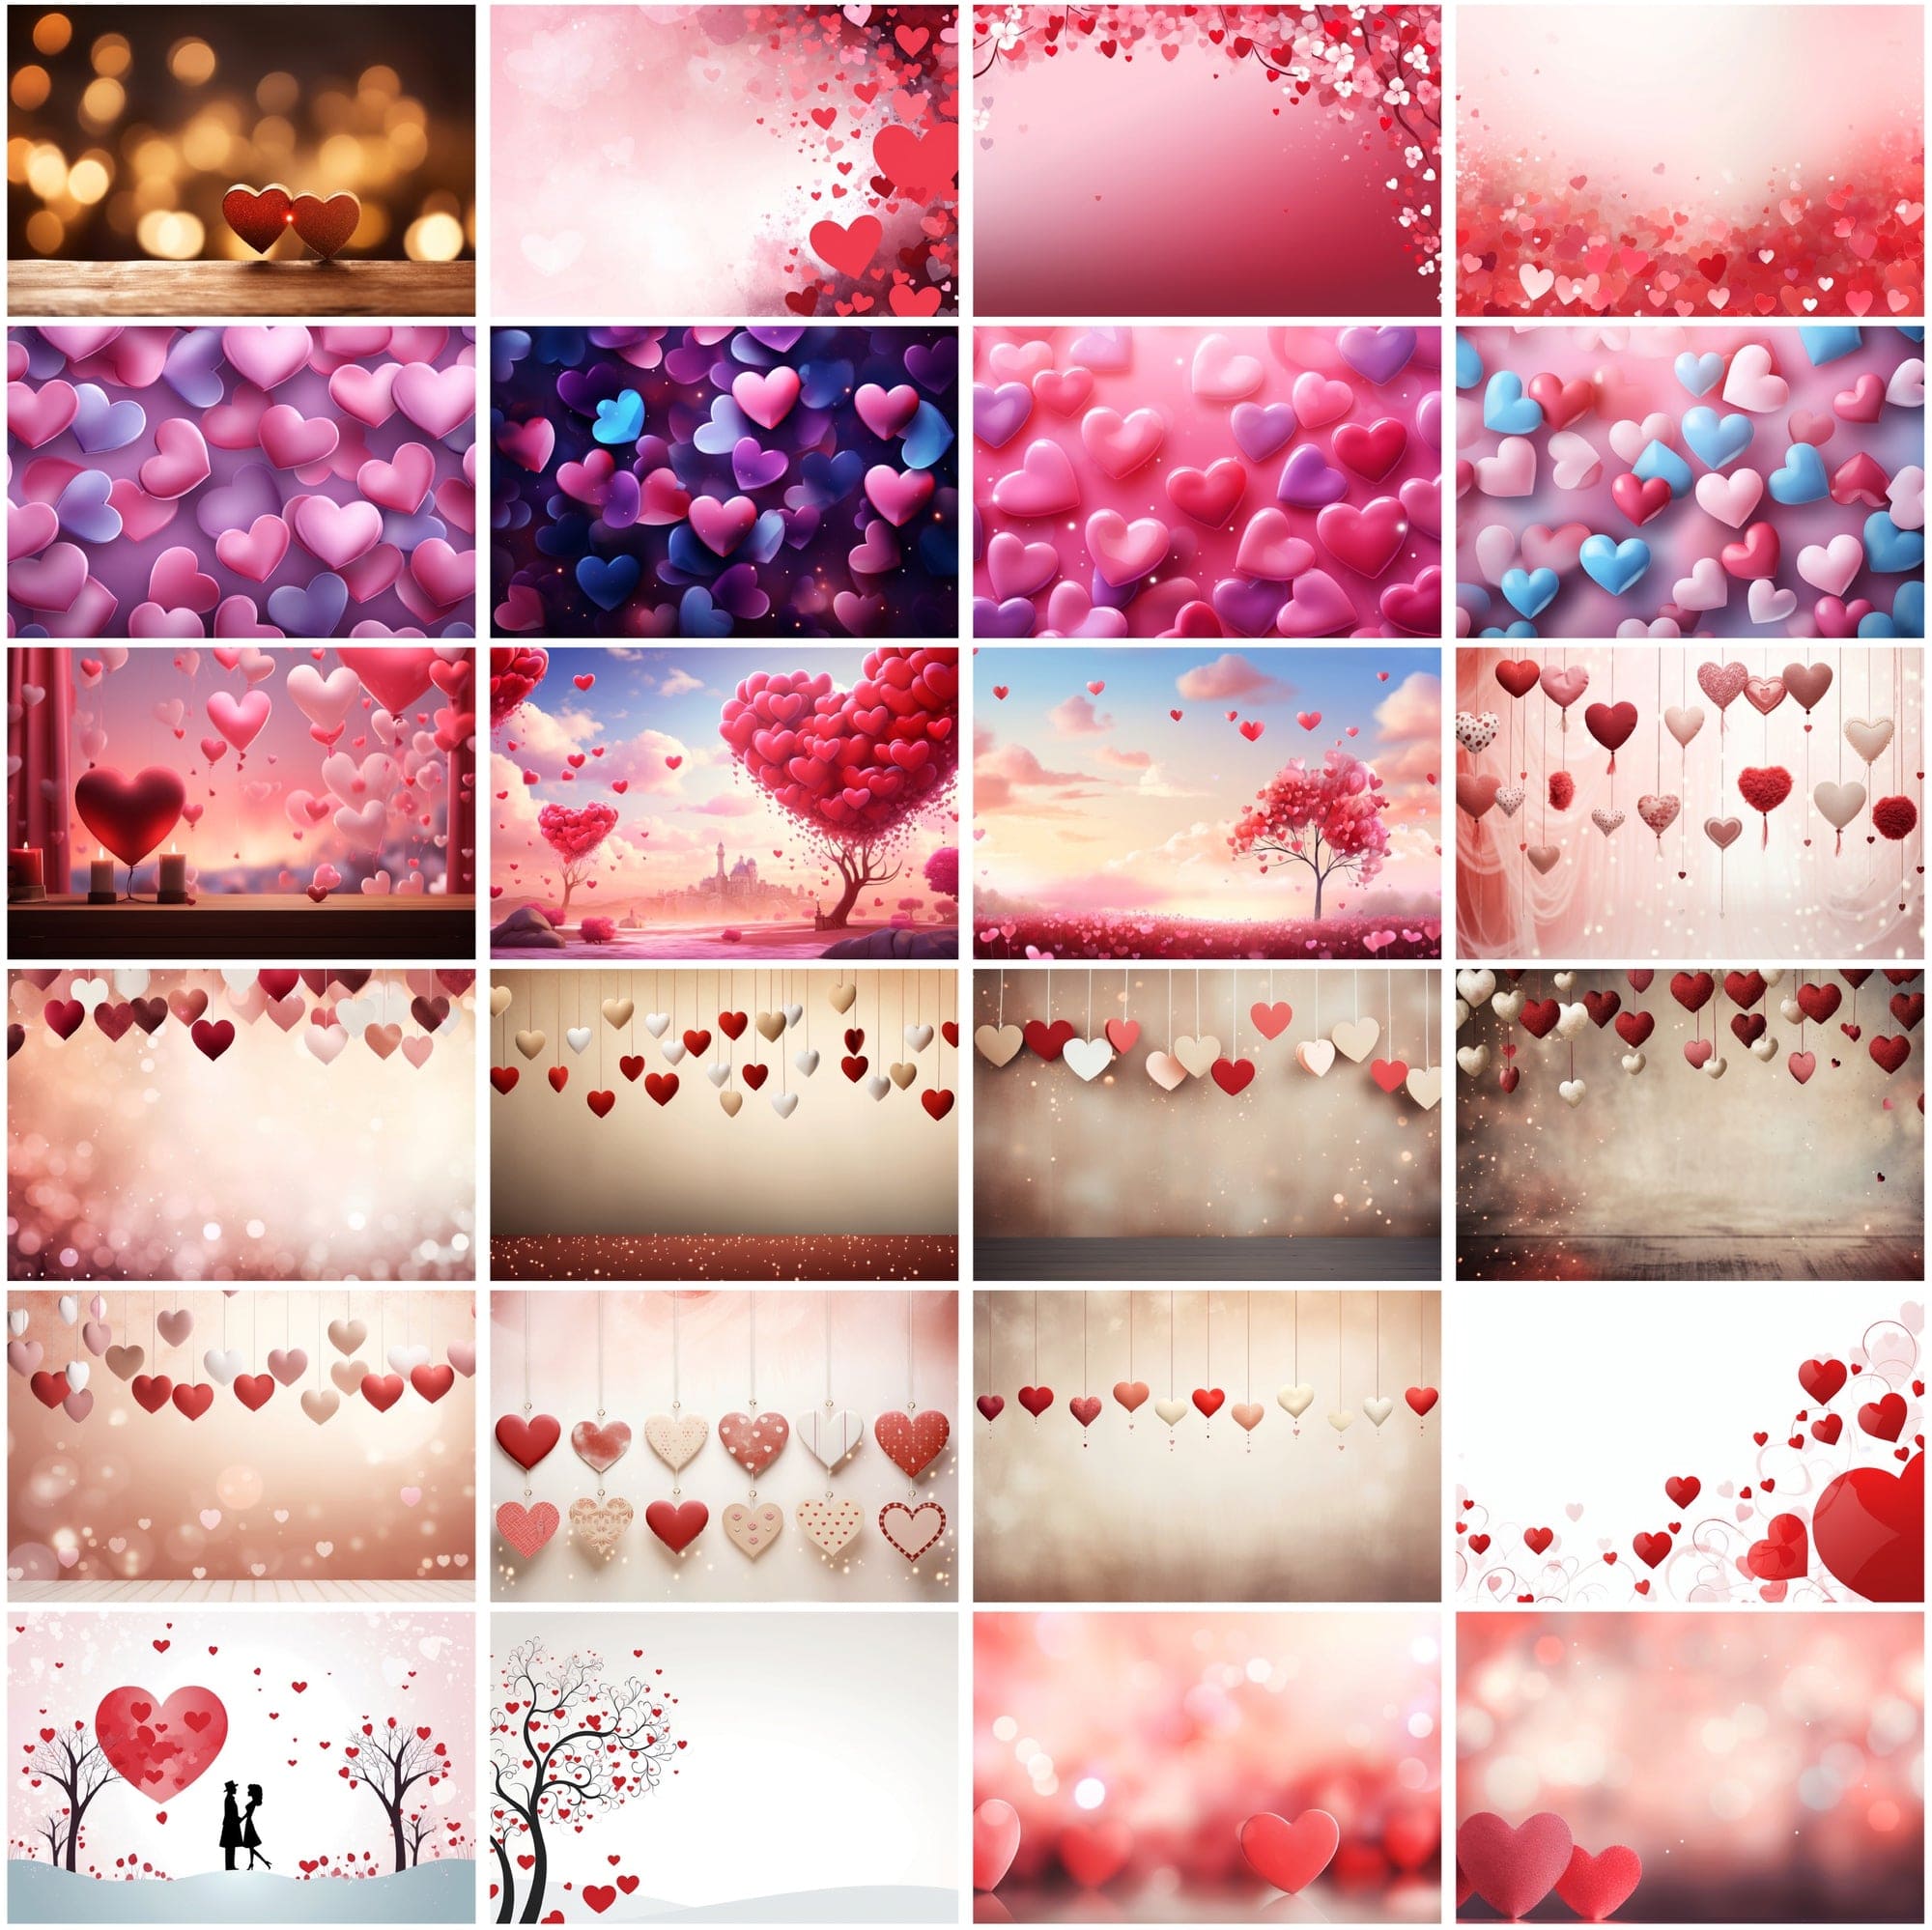 330 Love-Themed High-Resolution JPG Images for Valentine's Digital Download Sumobundle